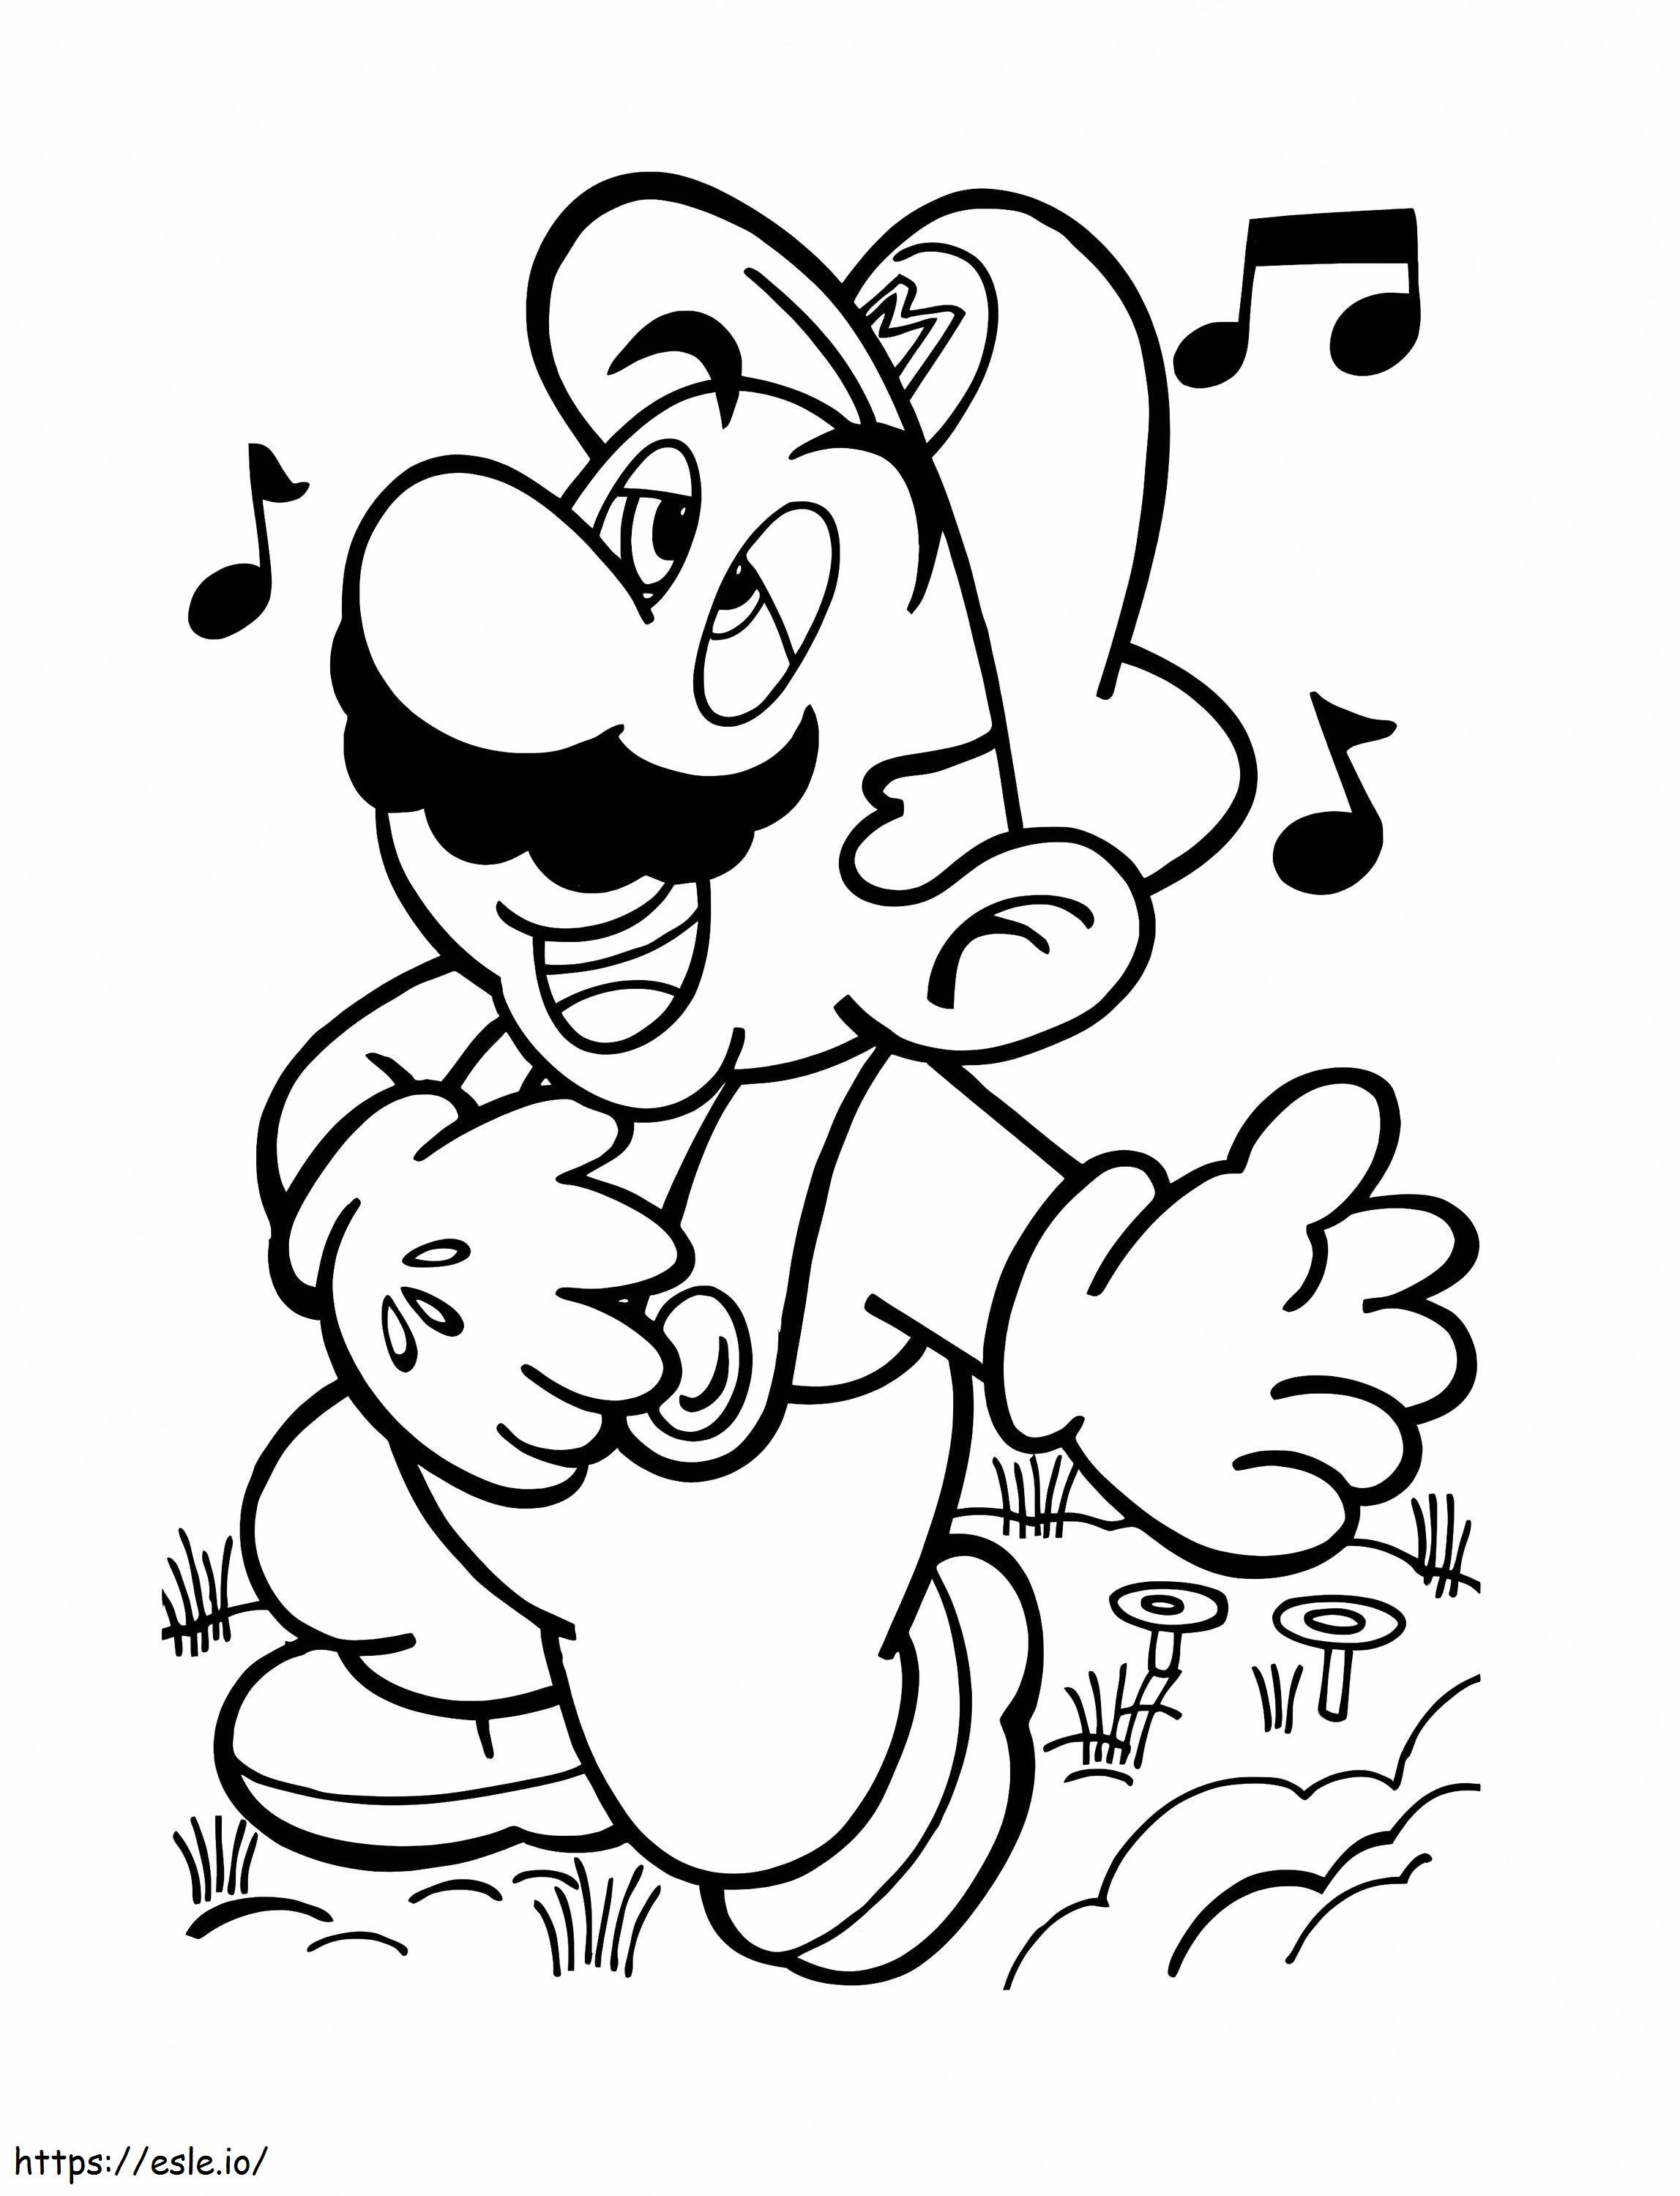 Mario zingen kleurplaat kleurplaat